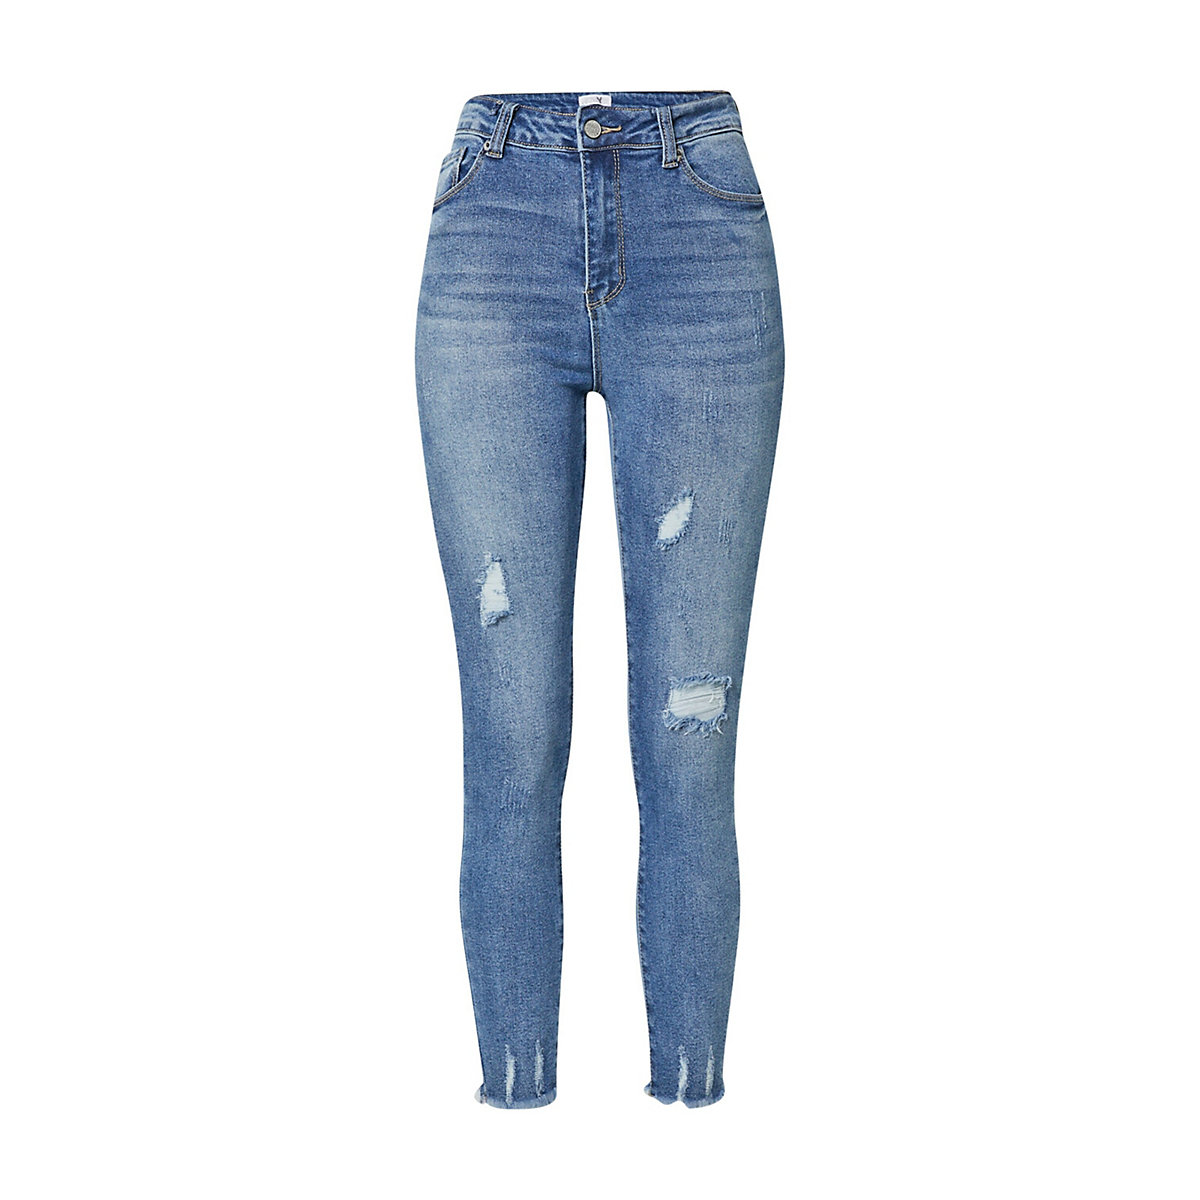 Hailys jeans liz blue denim